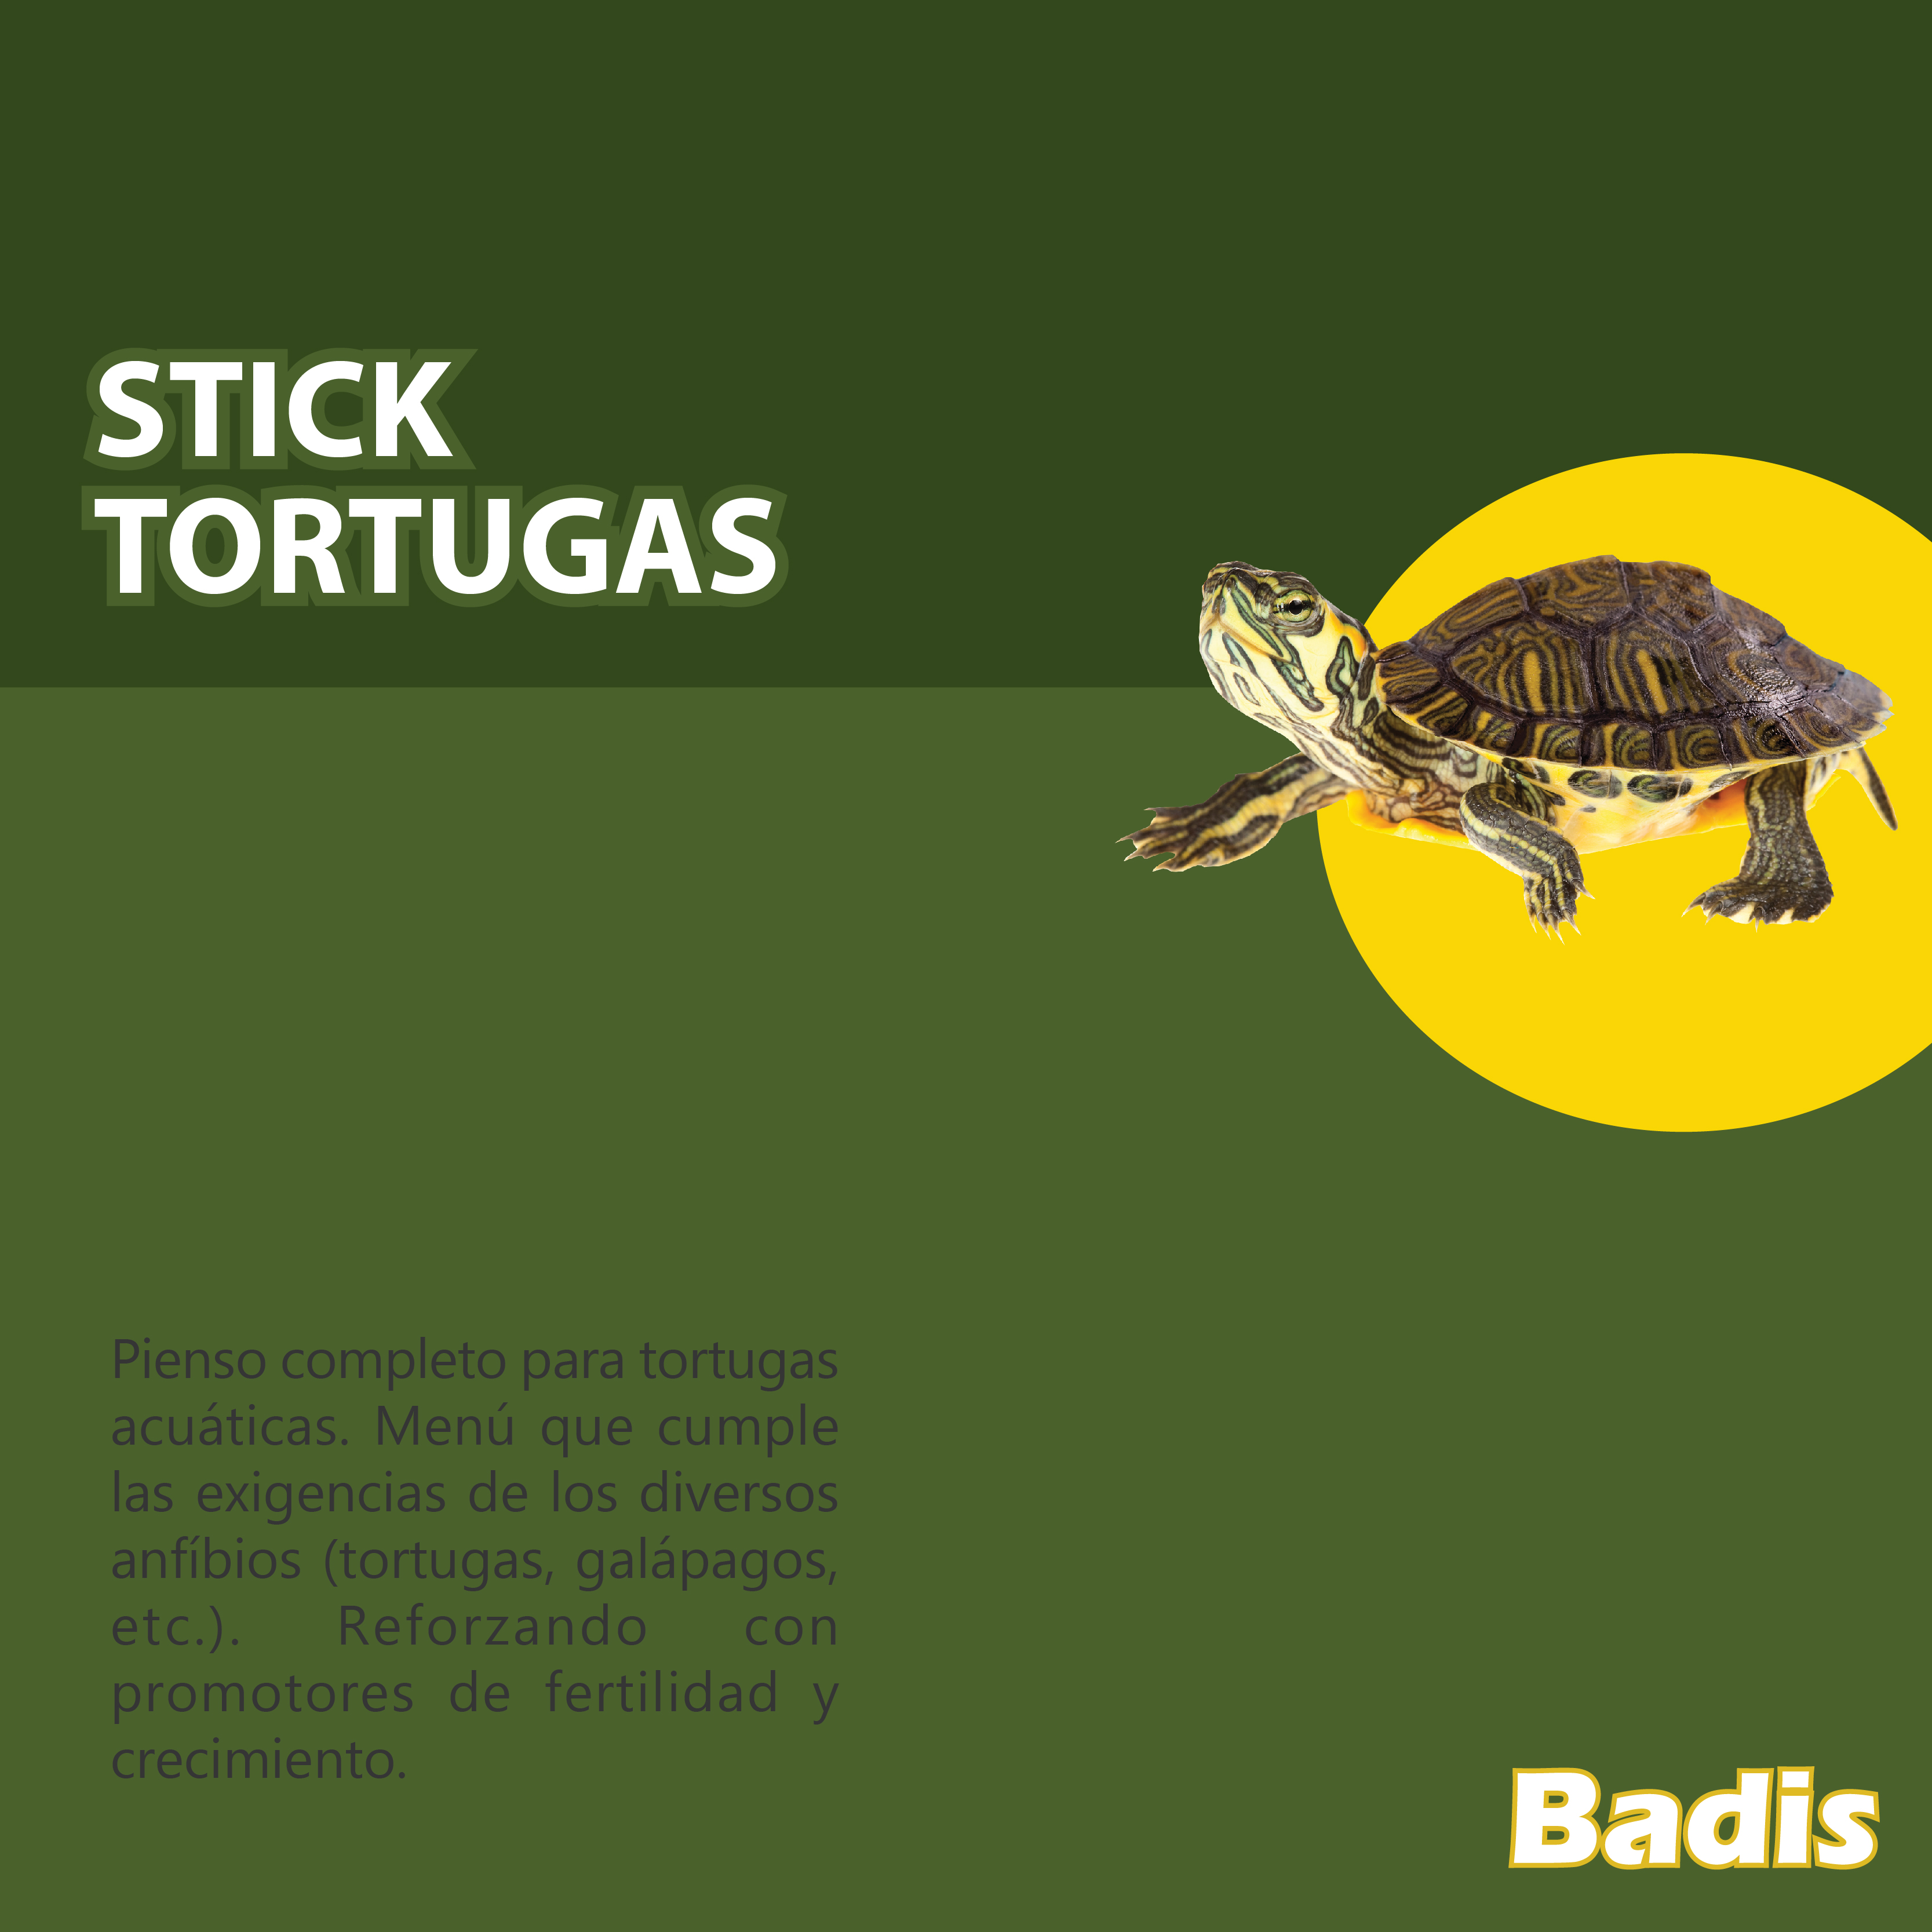 BADIS MENU DE TORTUGAS STICK